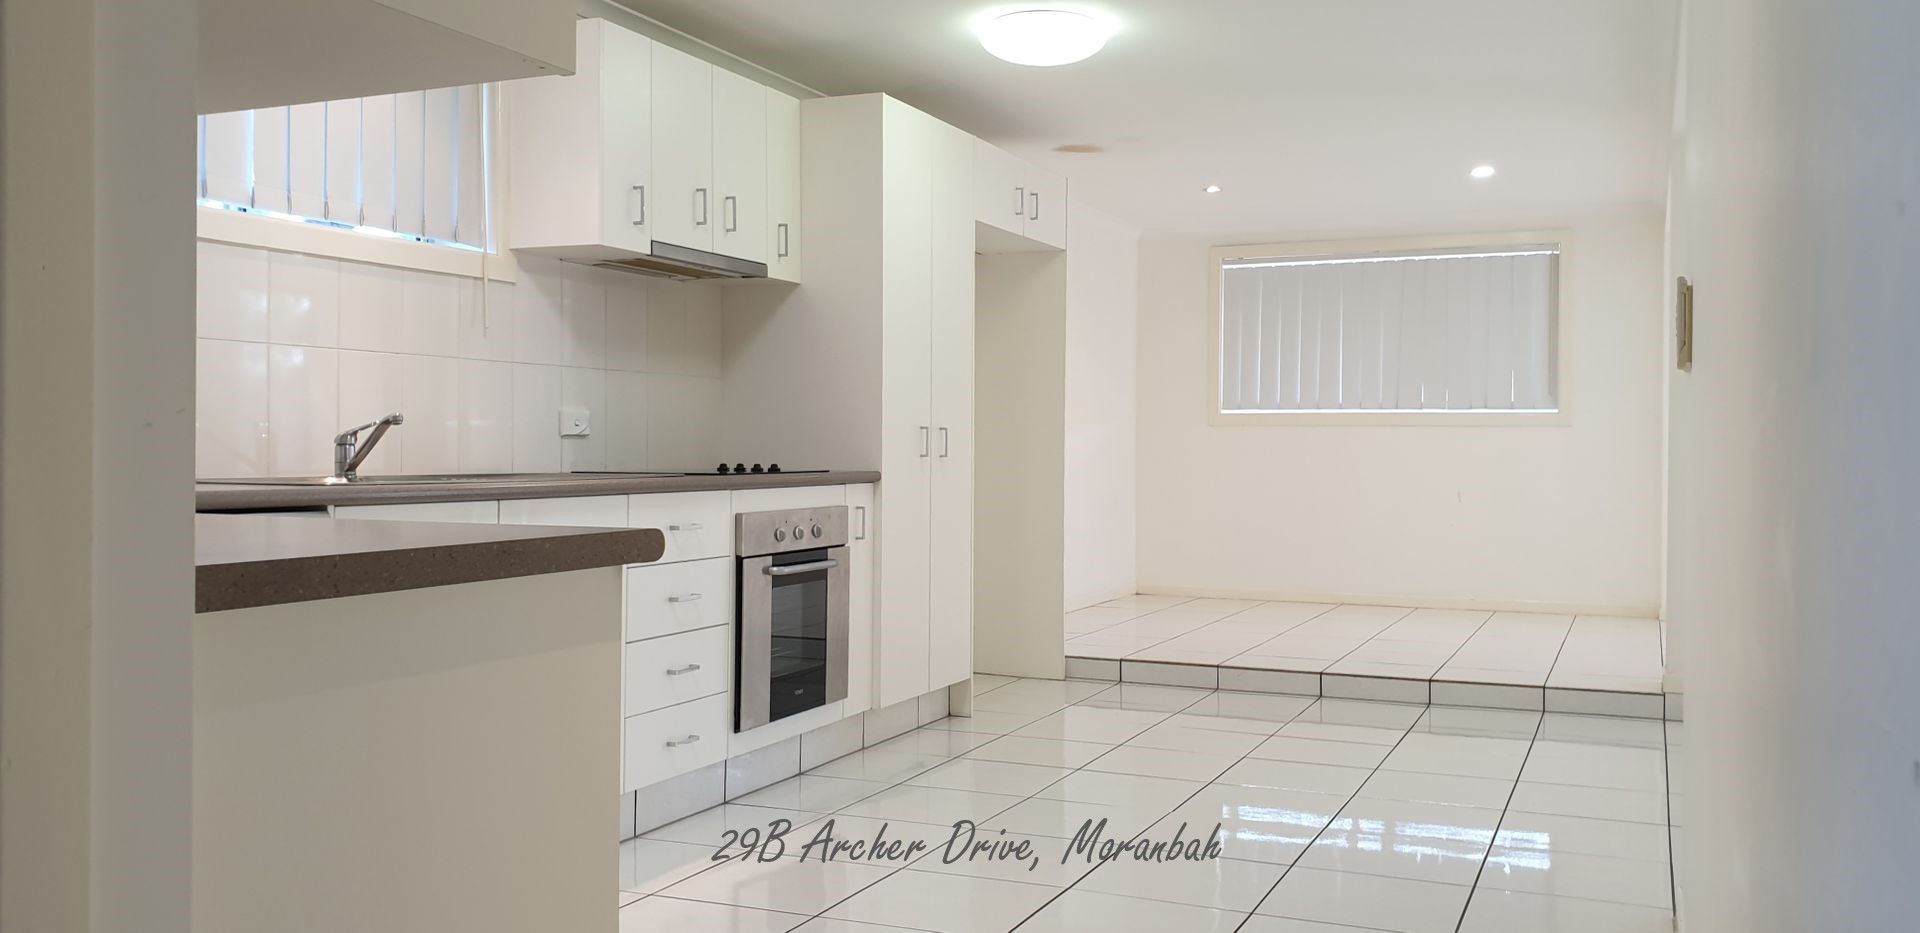 2 bedrooms Apartment / Unit / Flat in B/29 Archer Drive MORANBAH QLD, 4744